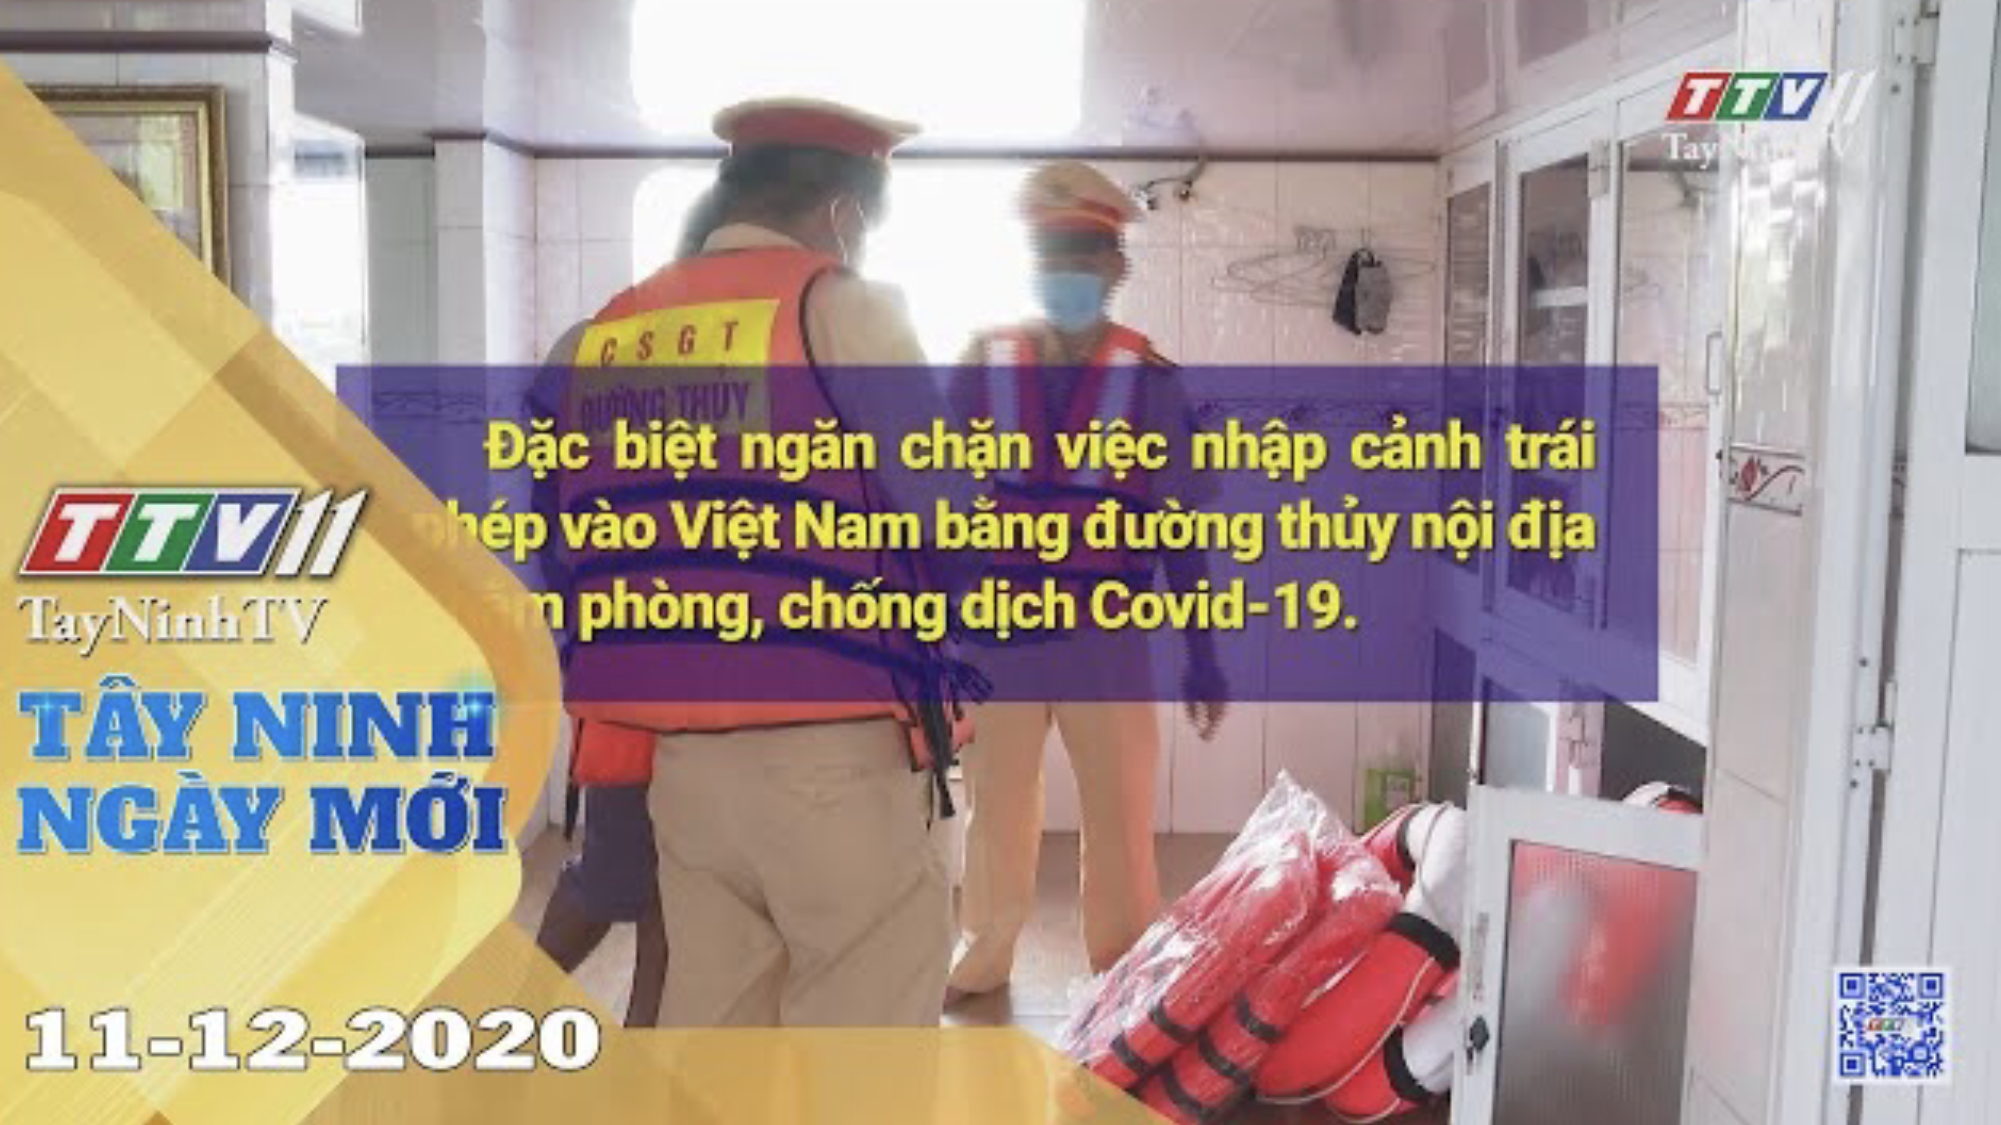 Tây Ninh Ngày Mới 11-12-2020 | Tin tức hôm nay | TayNinhTV